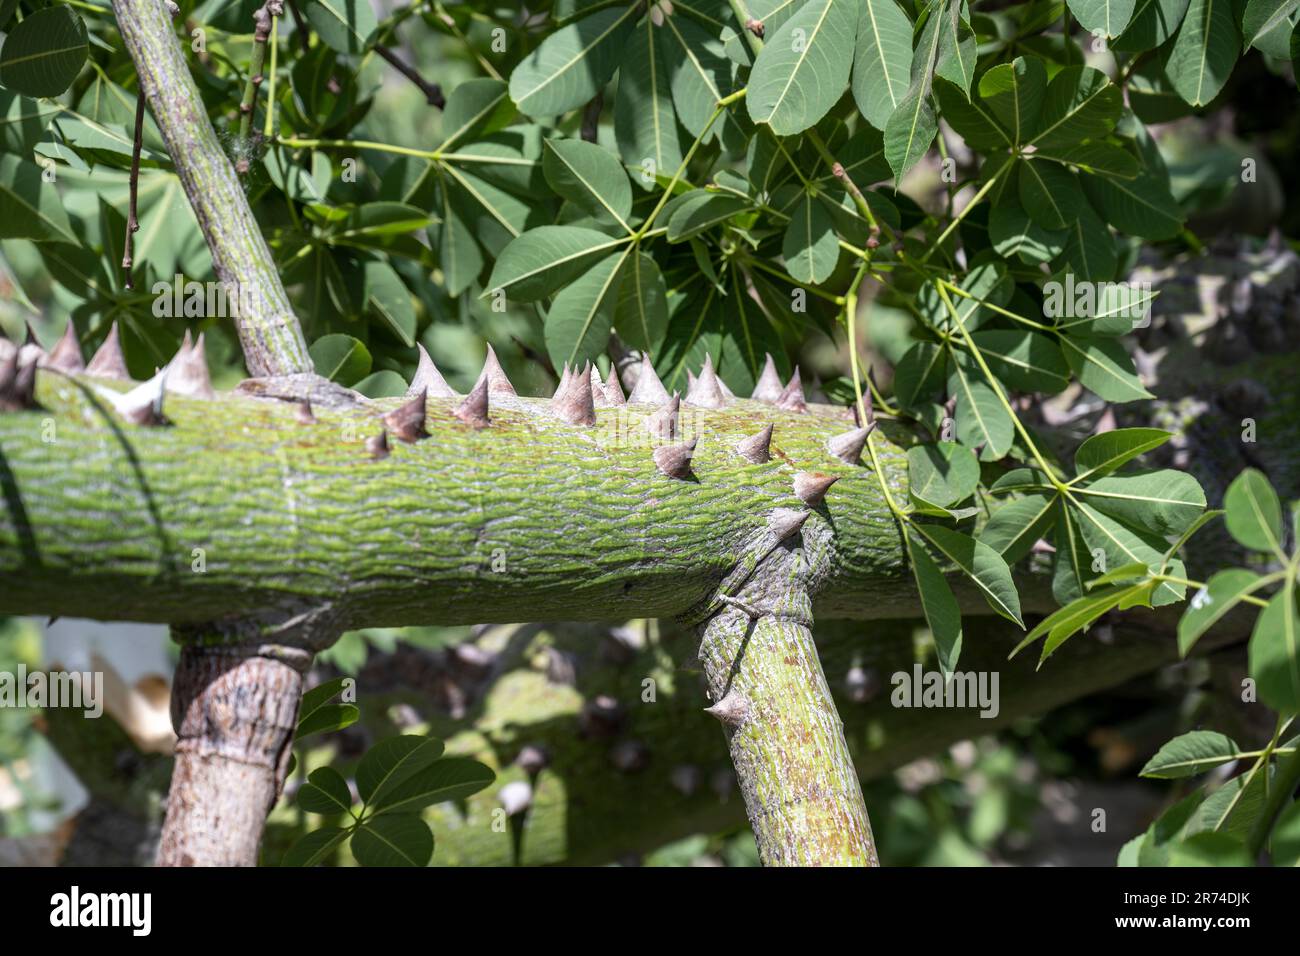 Nahaufnahme der Dornen am Stamm und Zweige des Seidenholzes oder Seidenholzbaums (Ceiba speciosa, früher Chorisia speciosa) ist ein Mitglied der Stockfoto